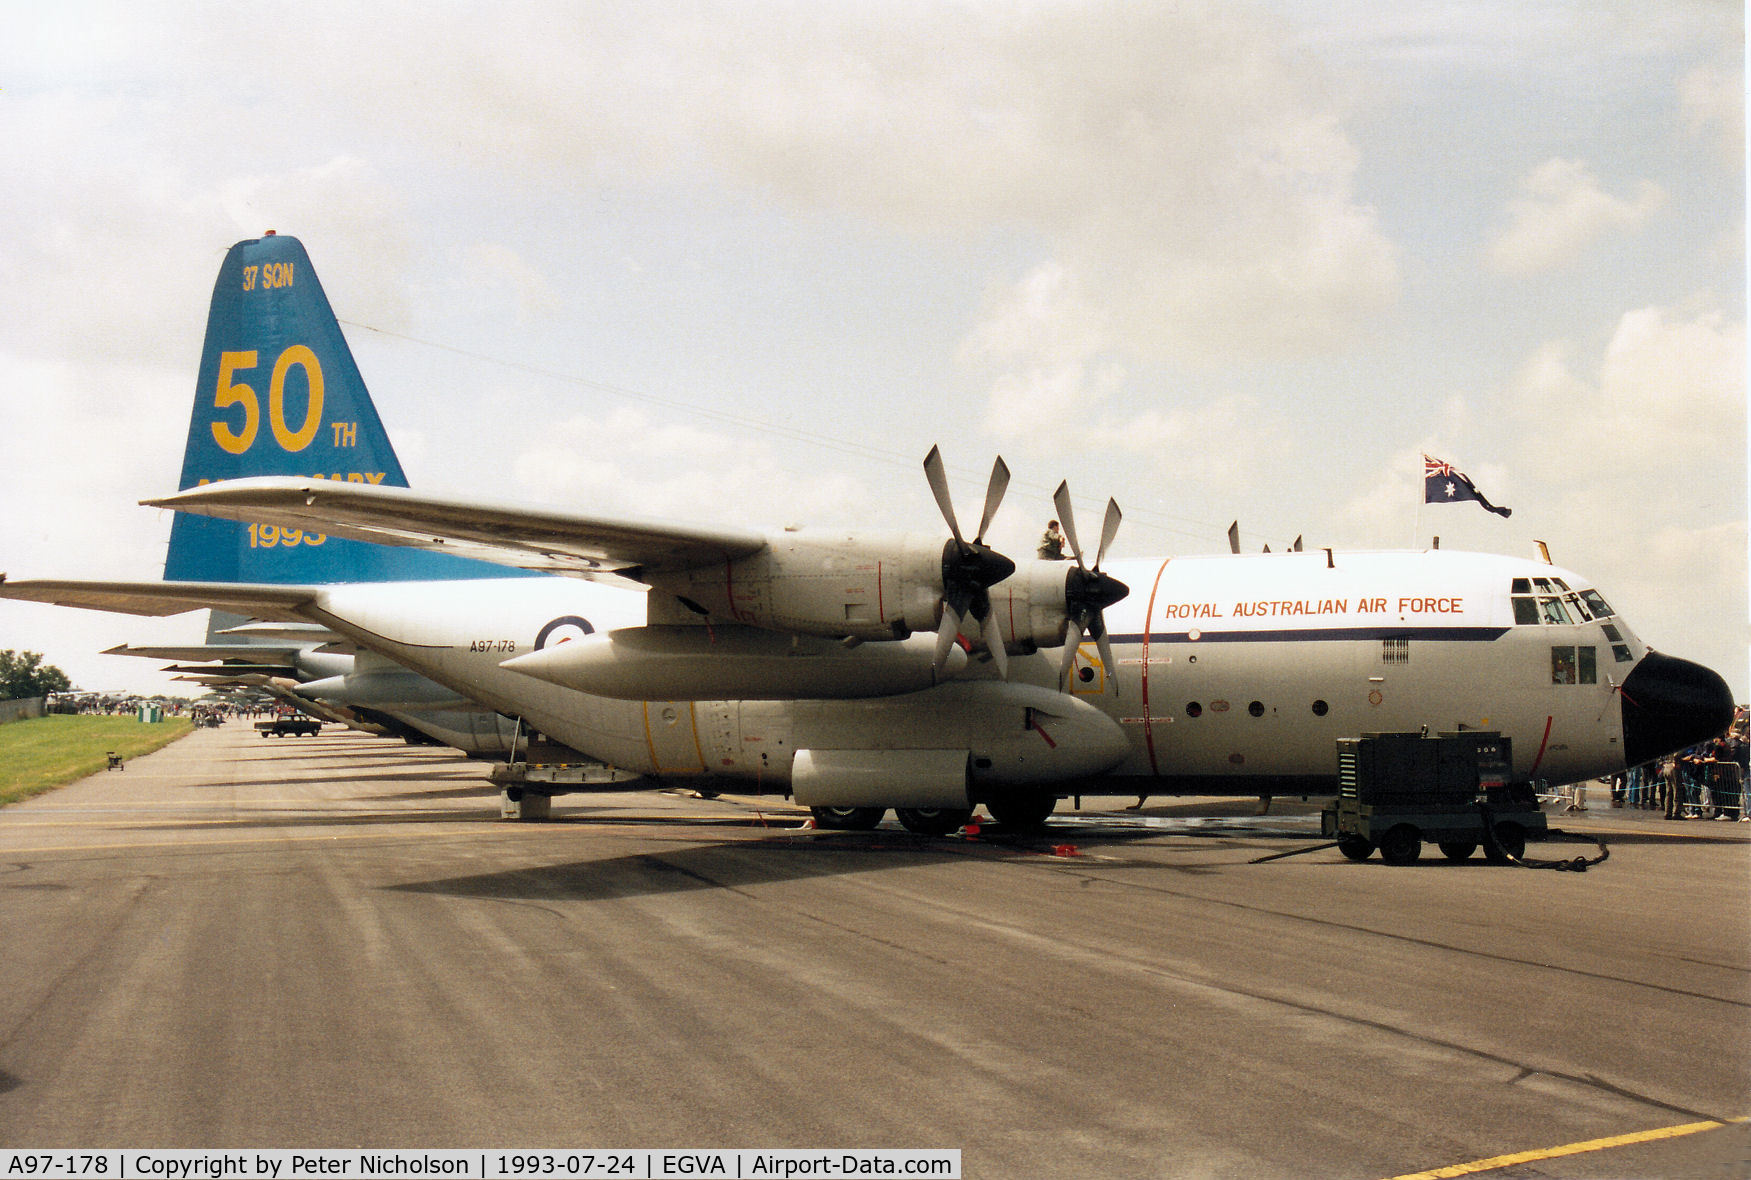 A97-178, Lockheed C-130E Hercules C/N 382-4178, C-130E Hercules, callsign Aussie 163, of 37 Squadron Royal Australian Air Force on display at the 1993 Intnl Air Tattoo at RAF Fairford.